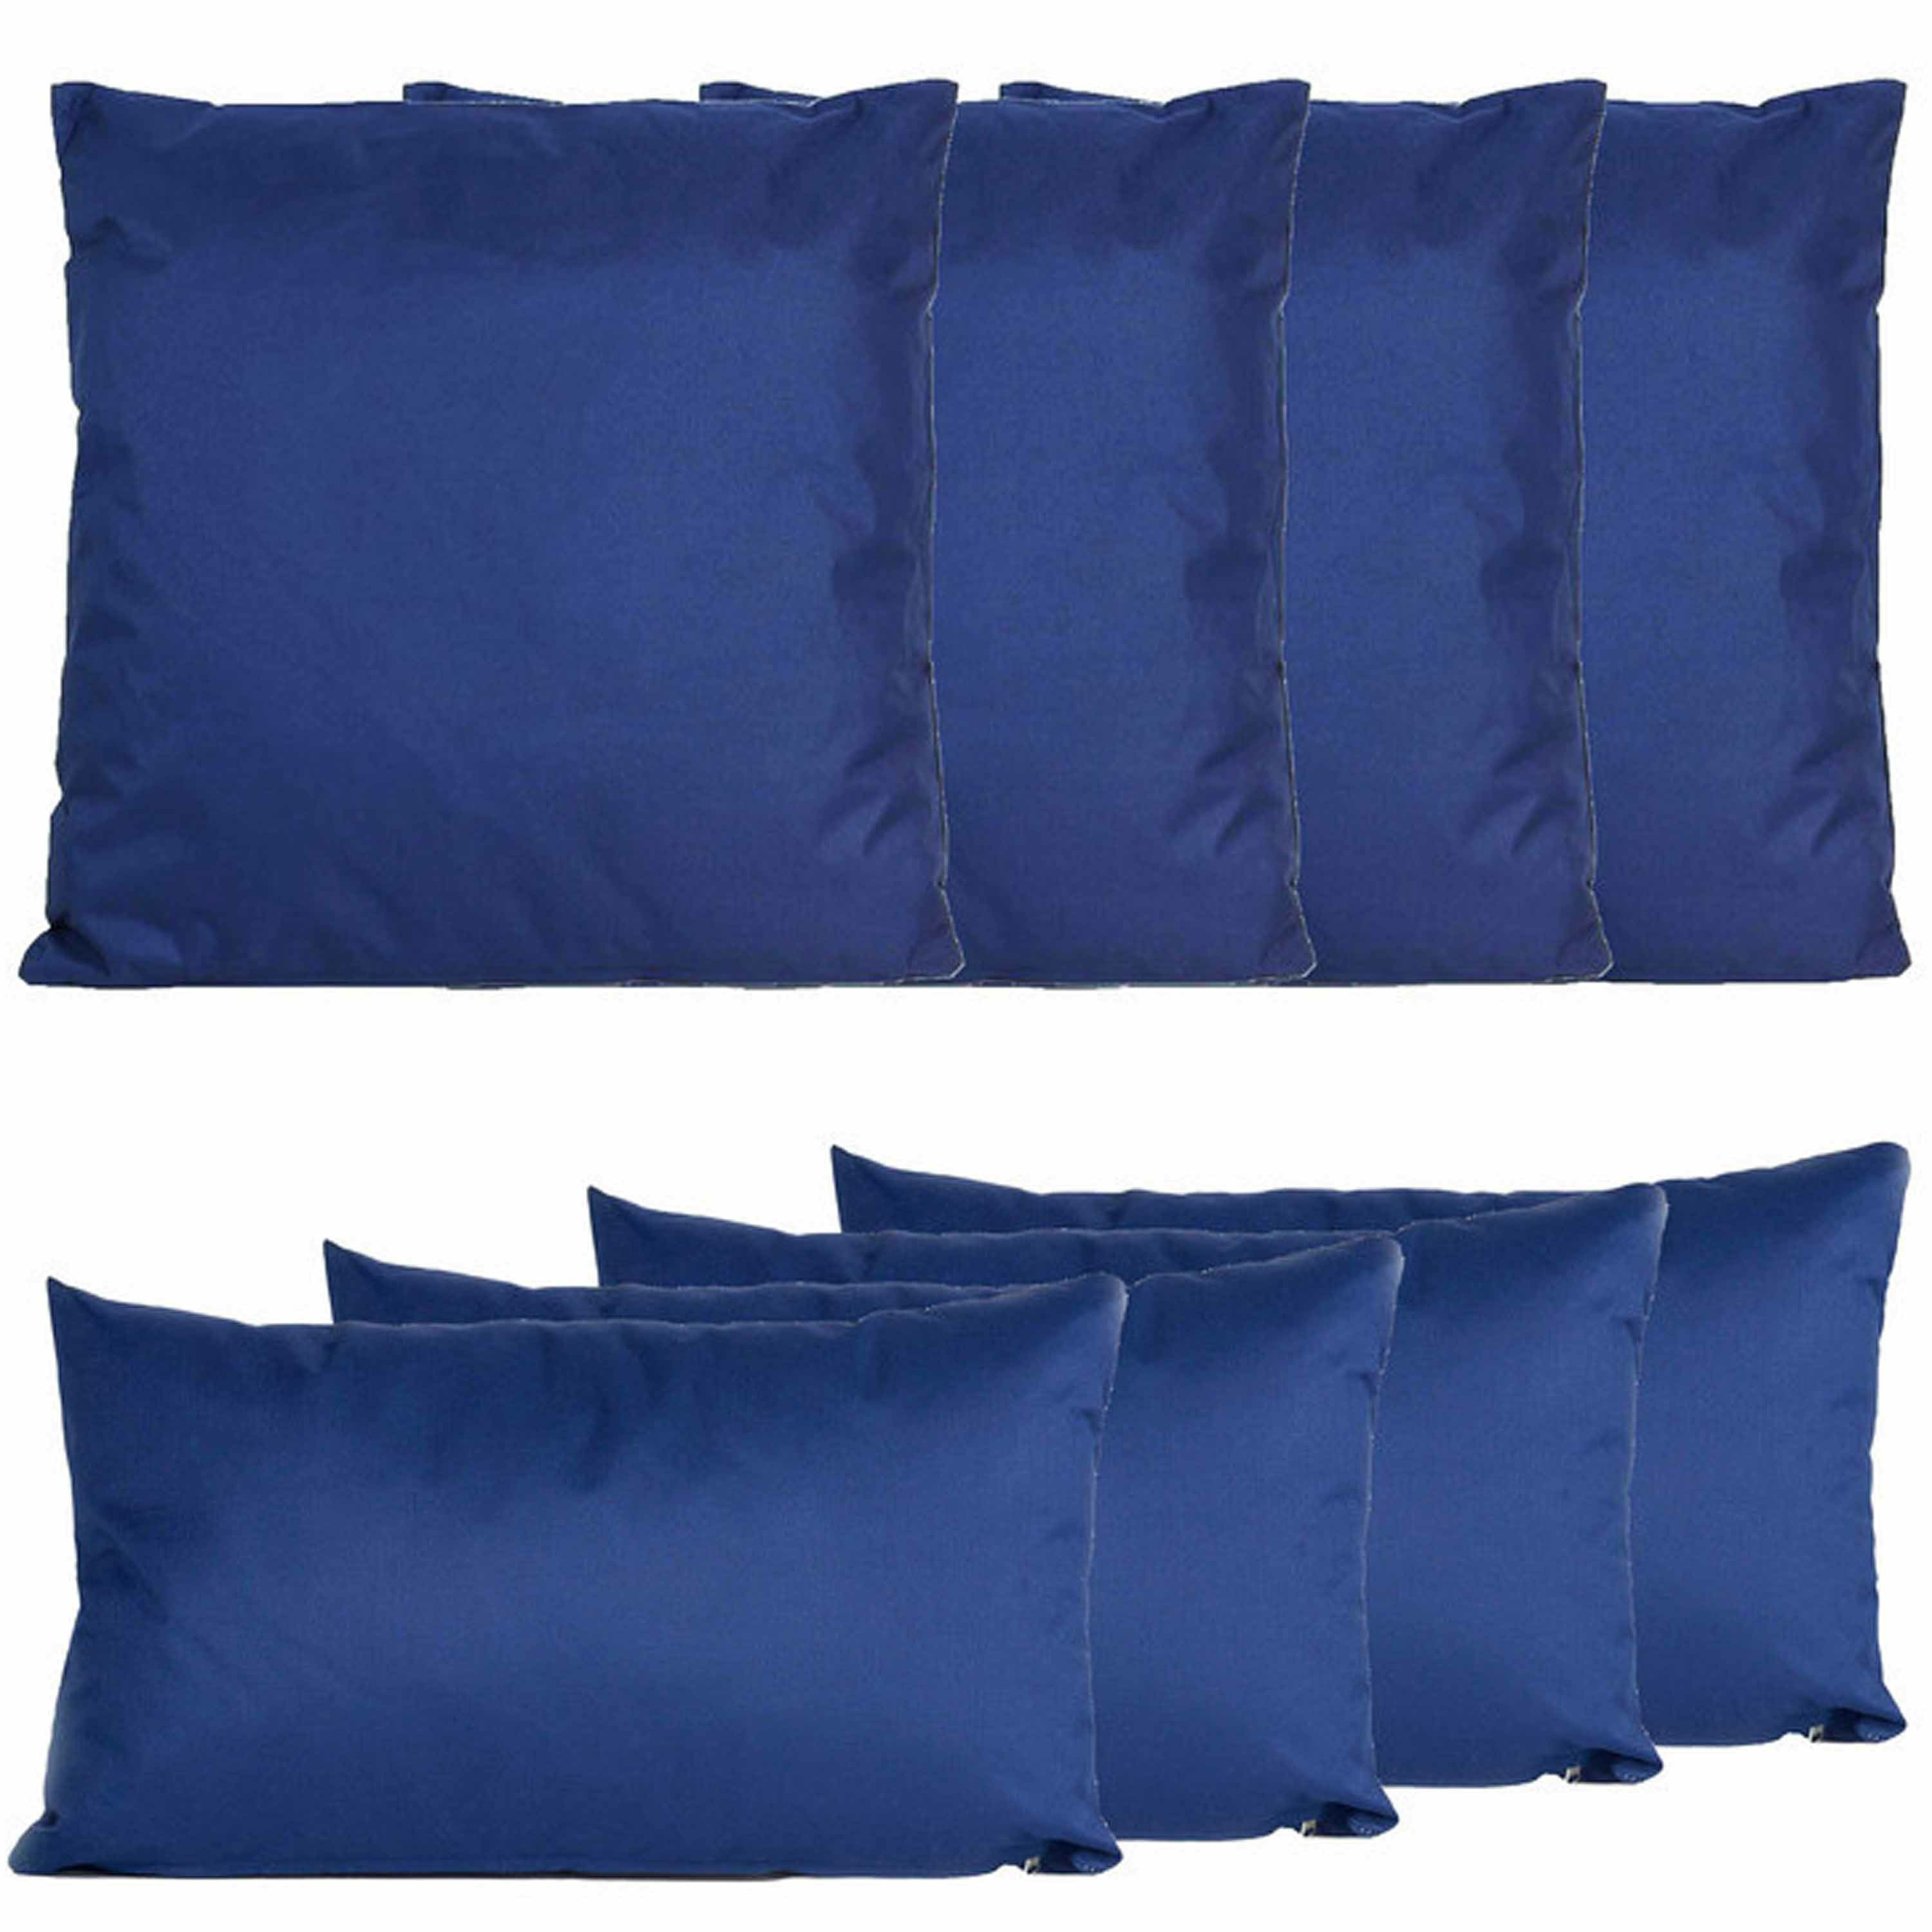 Bank-tuin kussens set binnen-buiten 8x stuks donkerblauw In 2 formaten laag-hoog